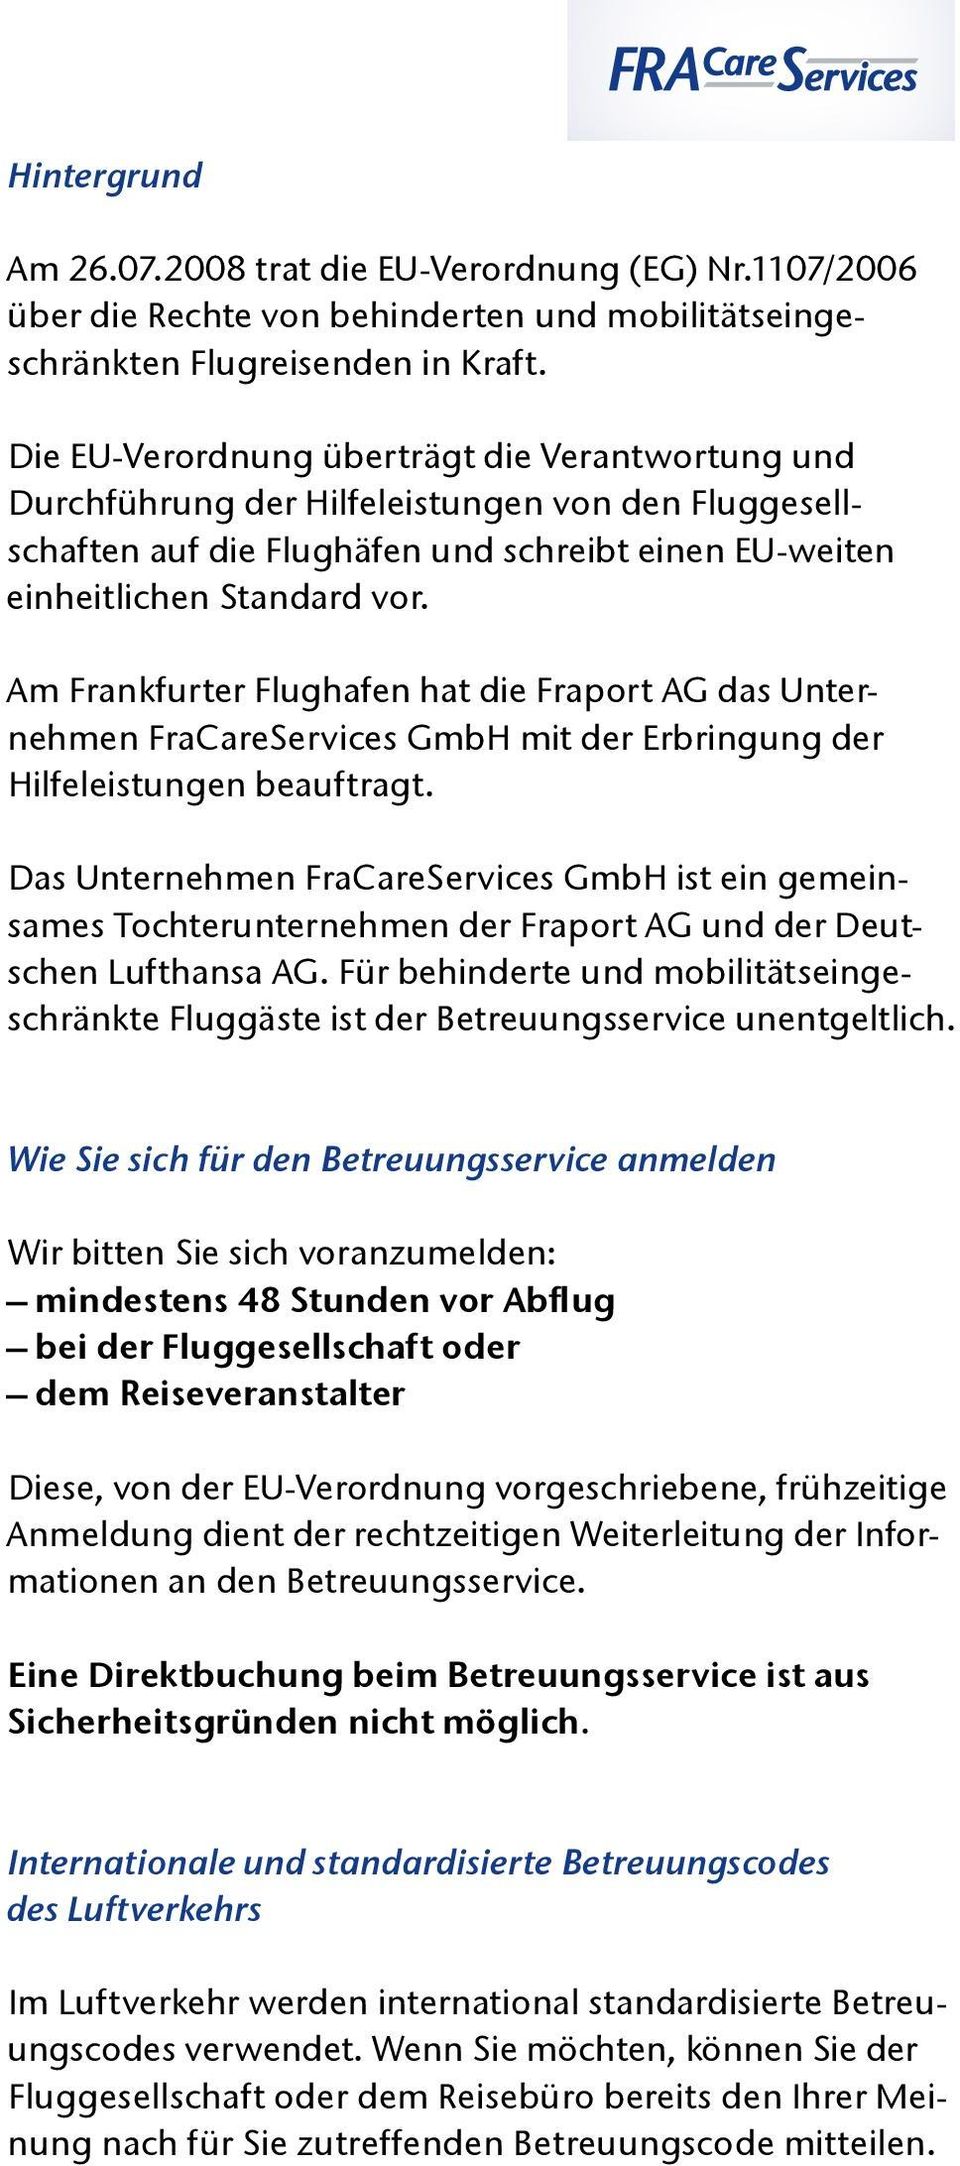 Am Frankfurter Flughafen hat die Fraport AG das Unternehmen FraCareServices GmbH mit der Erbringung der Hilfeleistungen beauftragt.